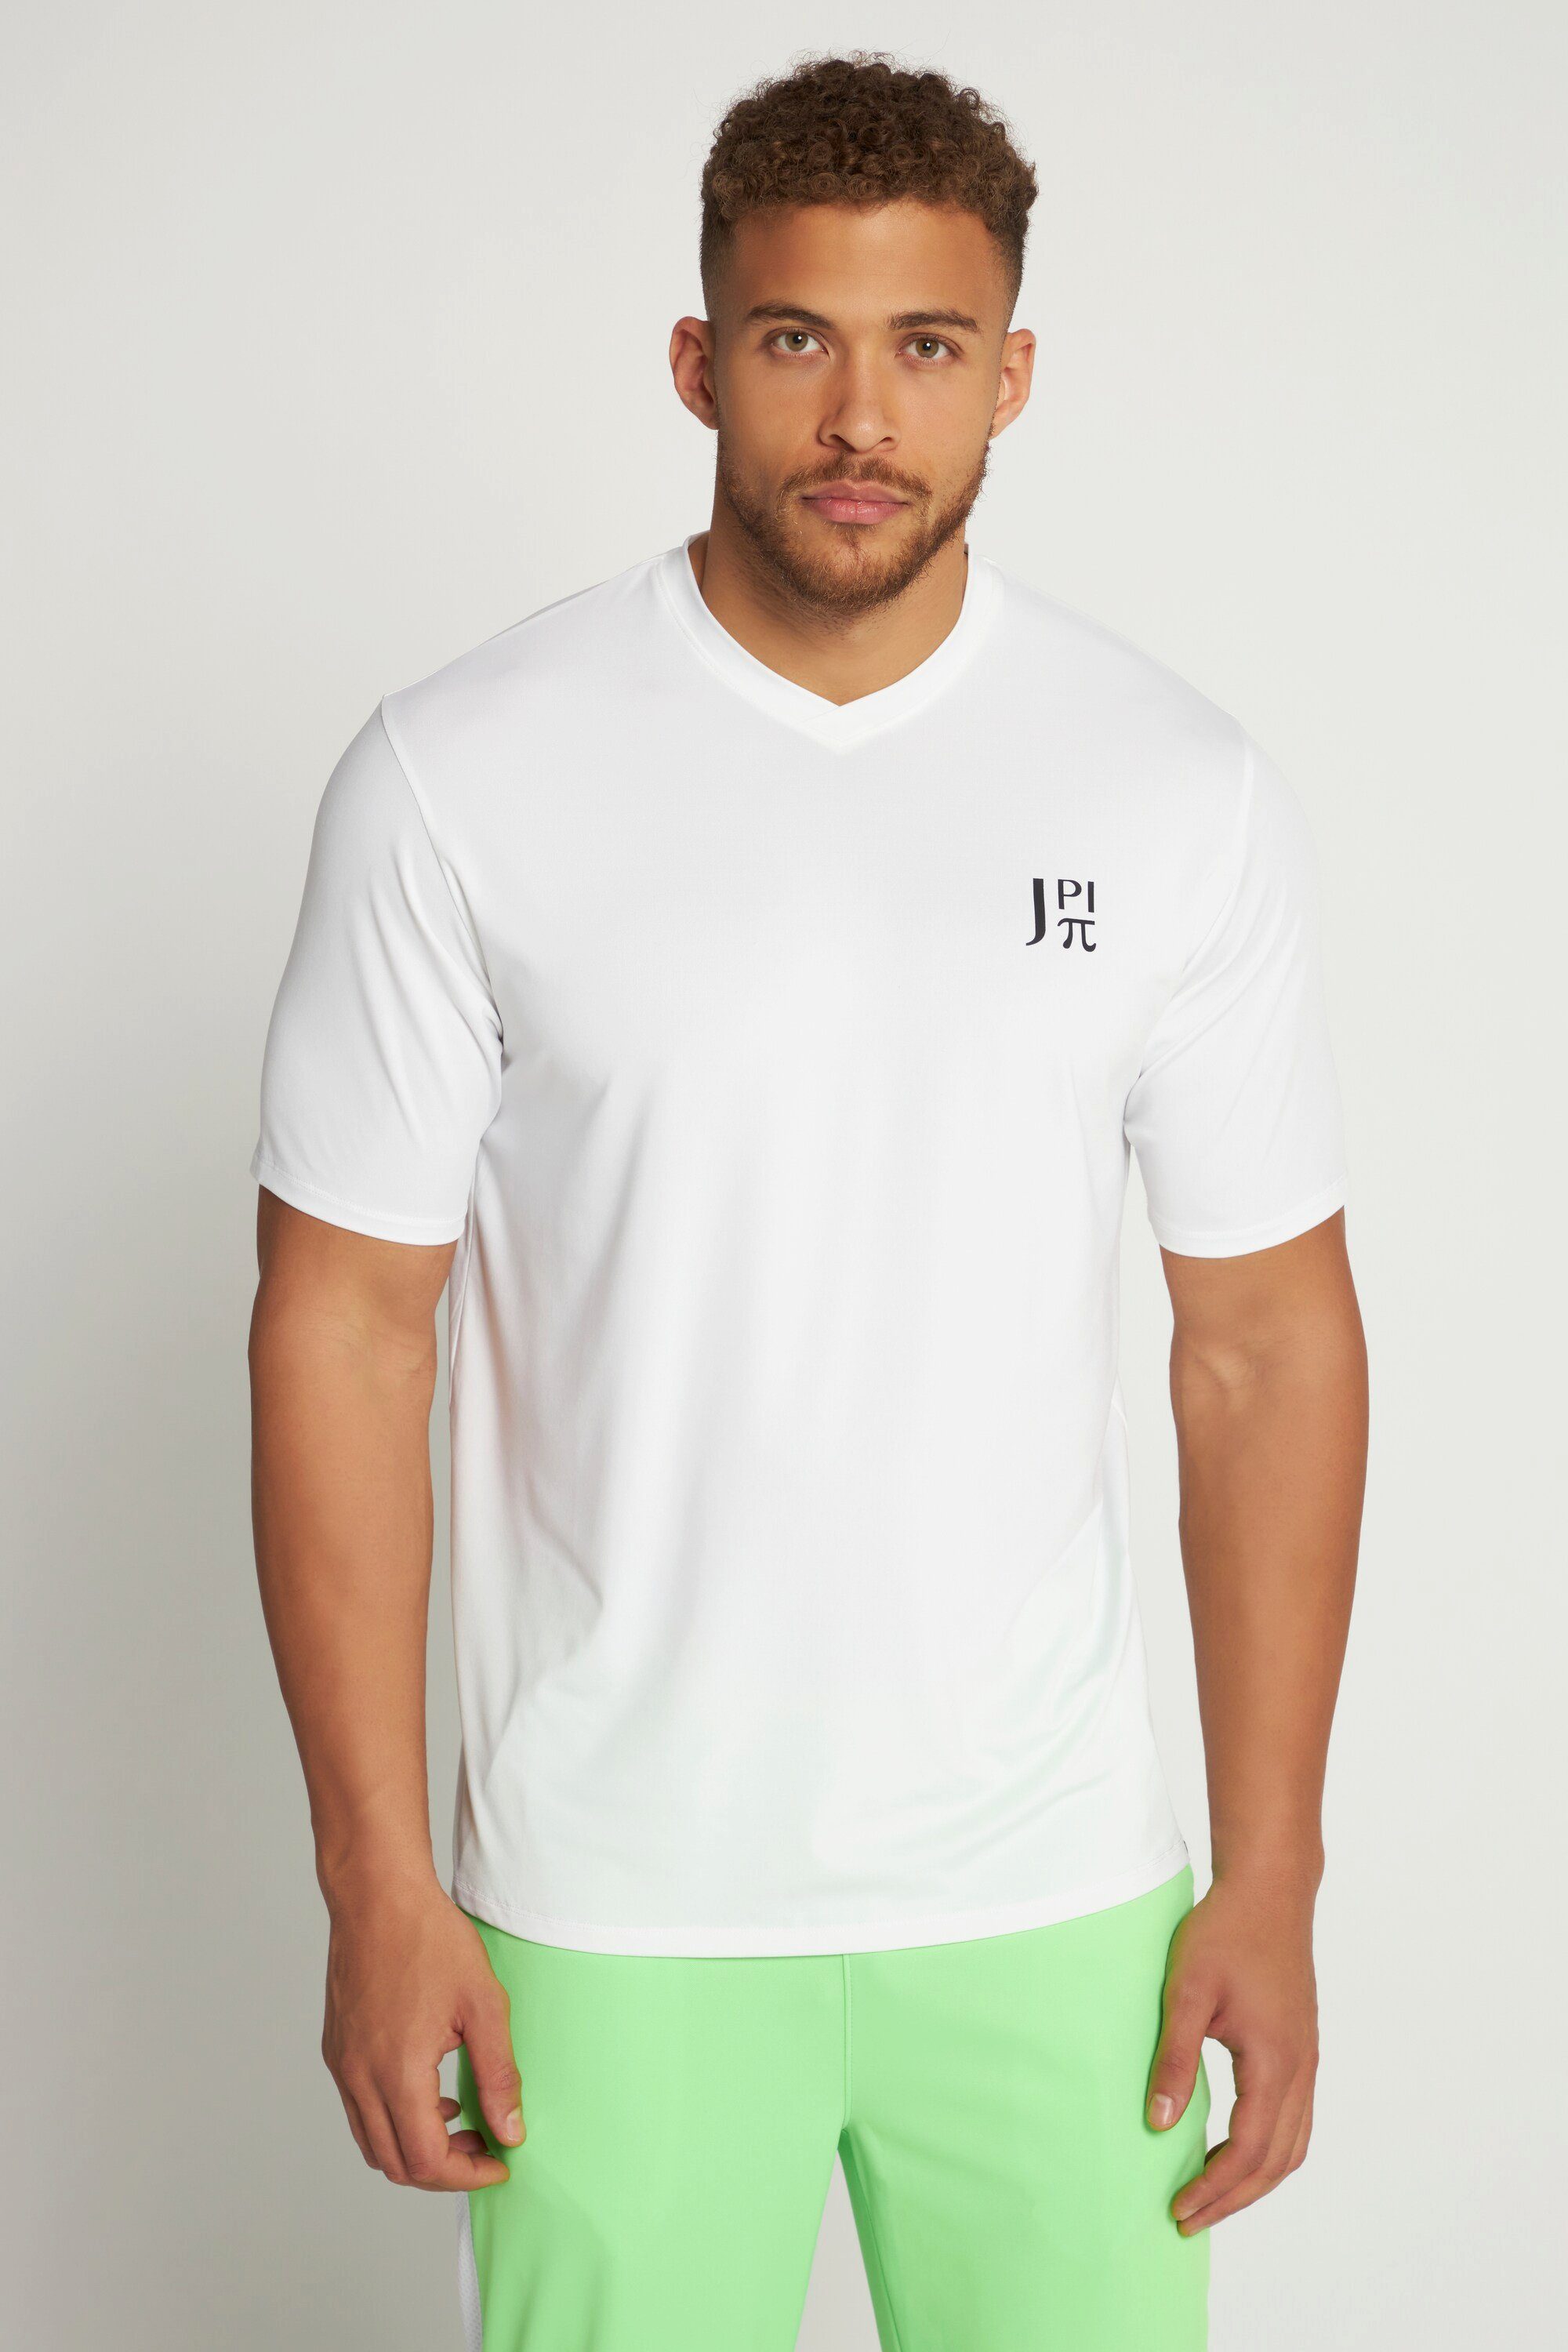 JP1880 T-Shirt Funktions-Shirt Fitness QuickDry schneeweiß | V-Shirts